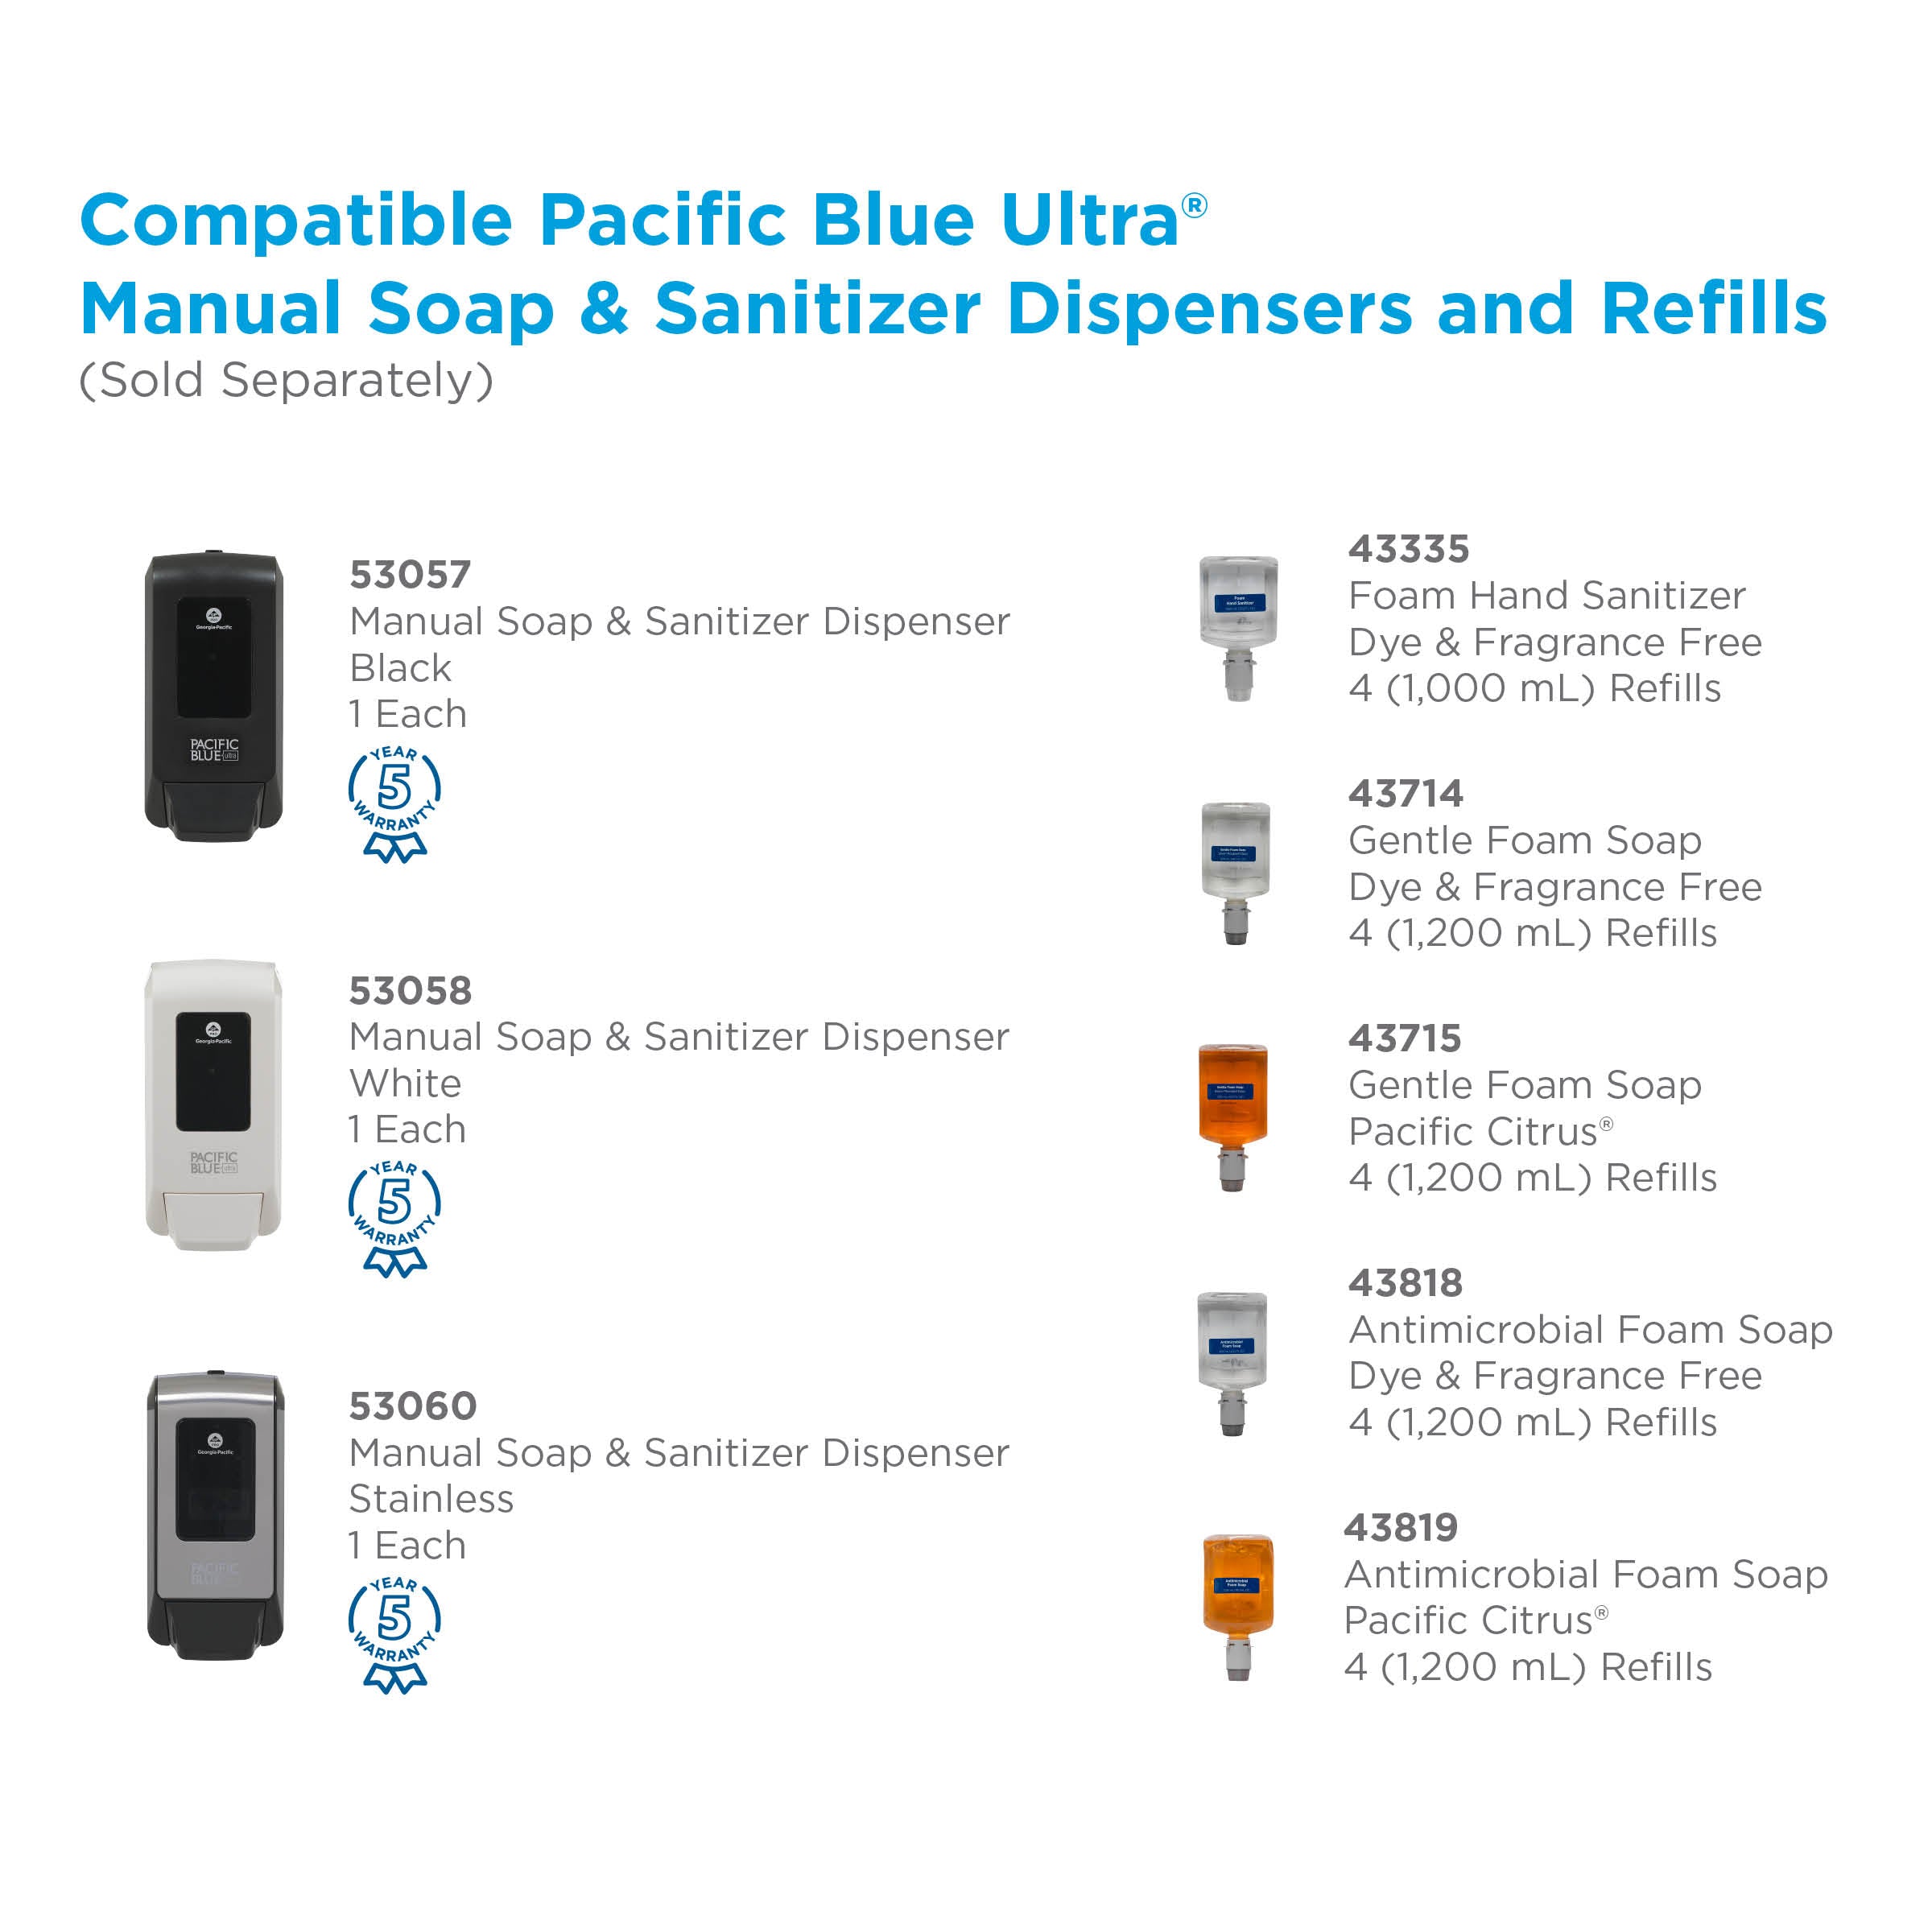 סבון ידיים מוקצף אנטי מיקרוביאלי PACIFIC BLUE ULTRA™ למתקנים ידניים מבית GP PRO, ללא צבע וניחוח, (4 בקבוקים של 1,200 mL סהכ 4,800 mL)